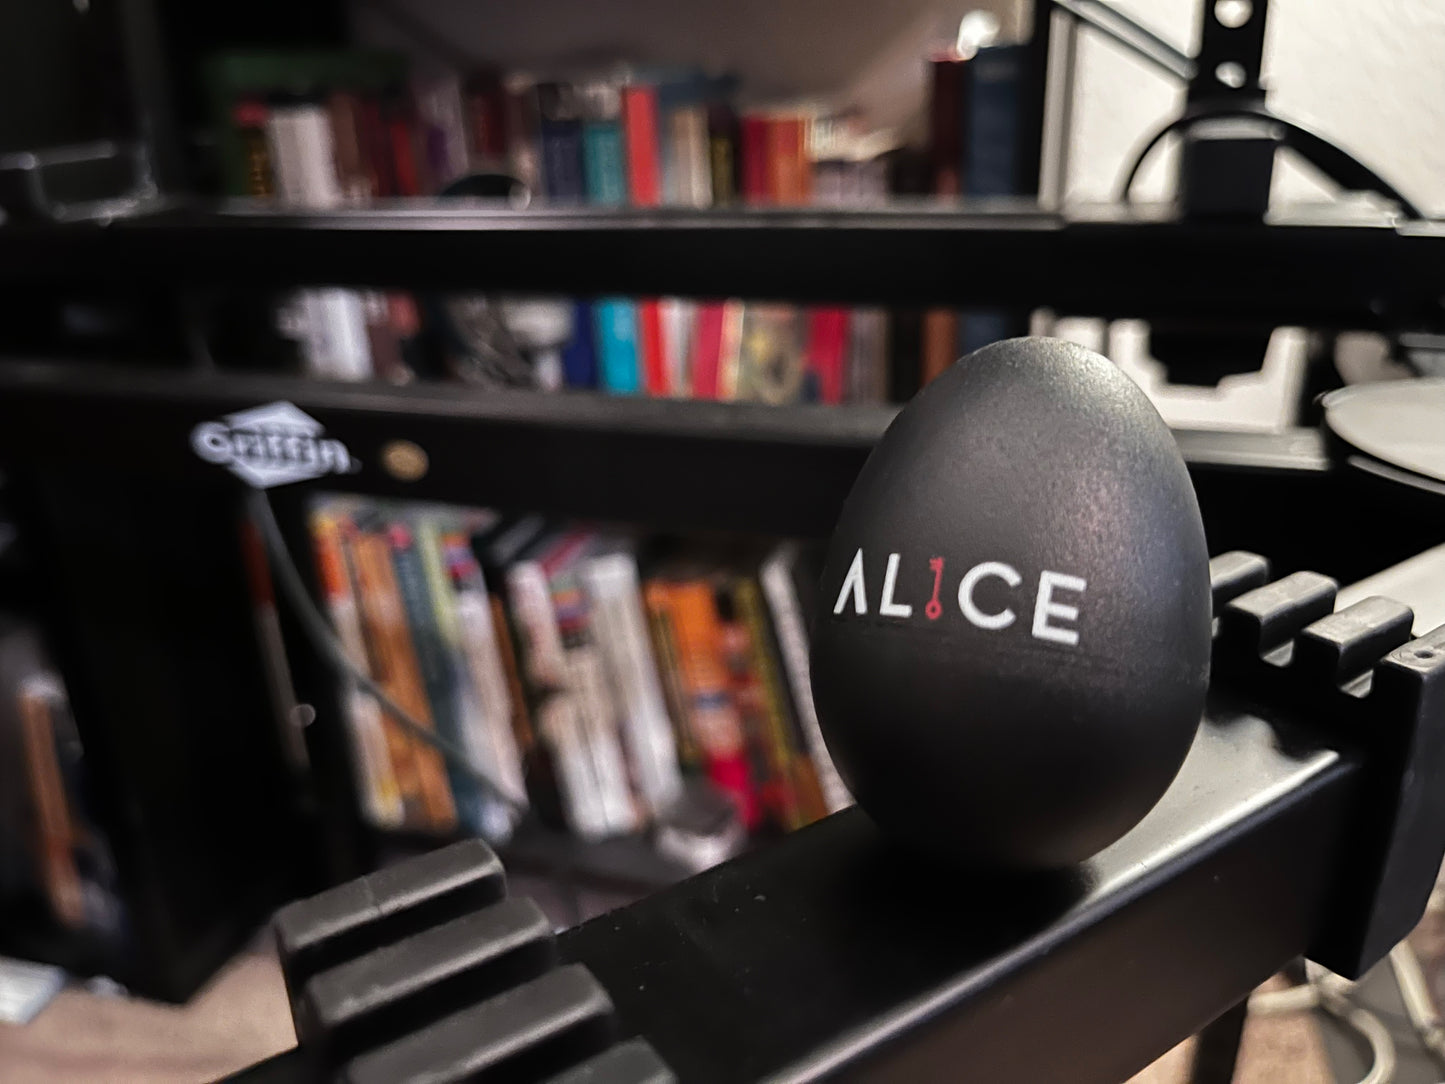 AL1CE Branded Egg Shaker